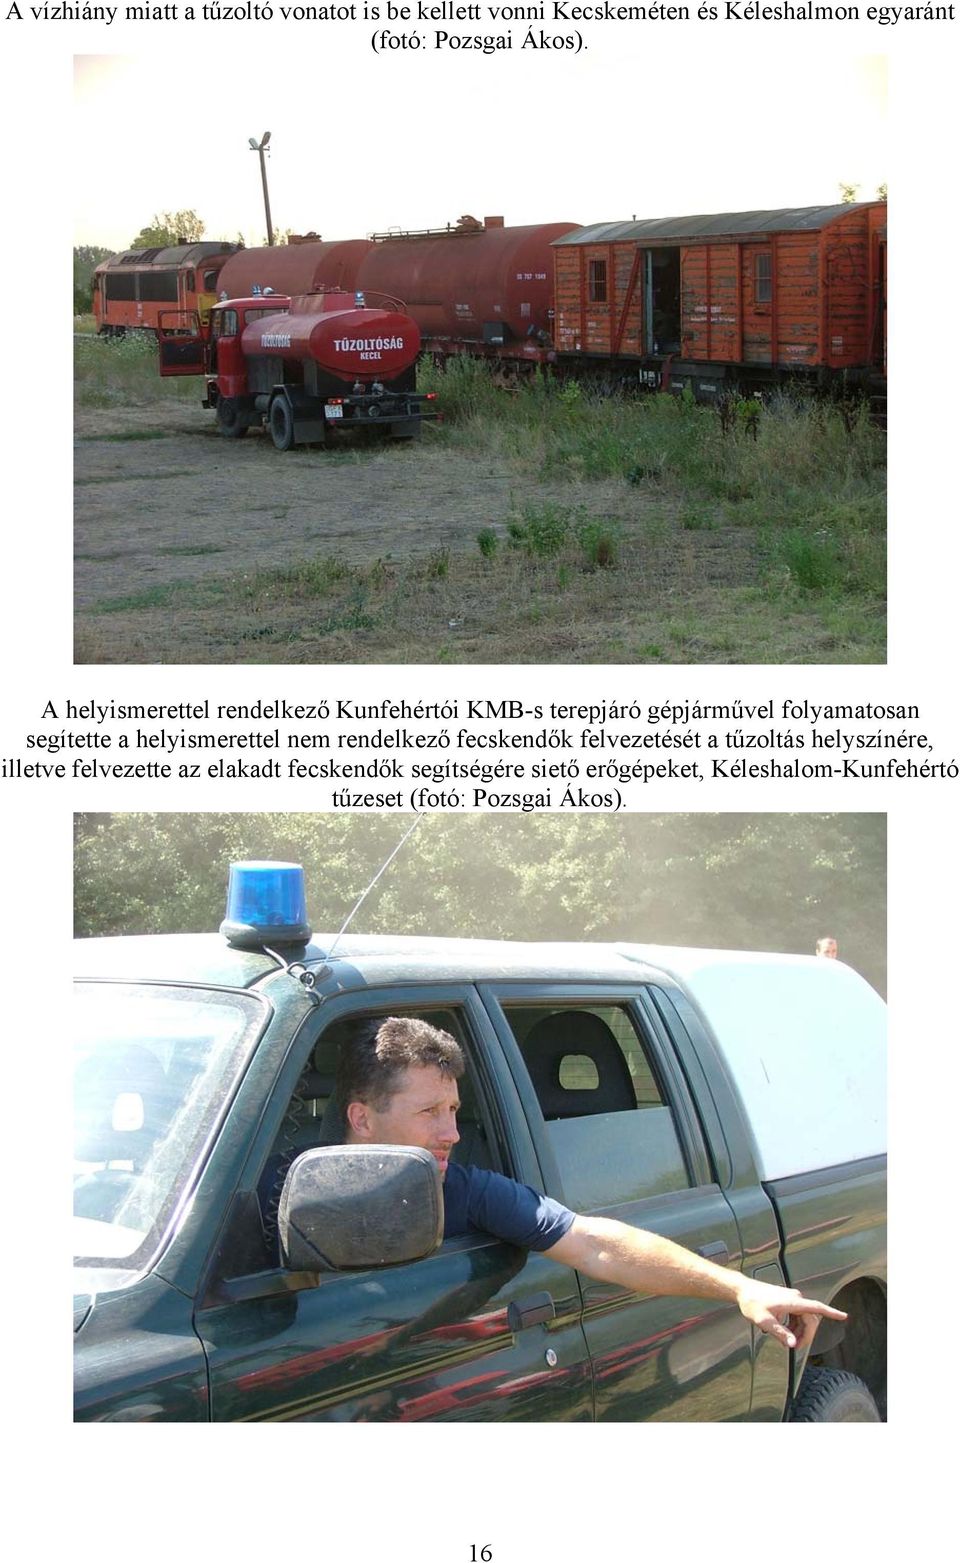 A helyismerettel rendelkező Kunfehértói KMB-s terepjáró gépjárművel folyamatosan segítette a